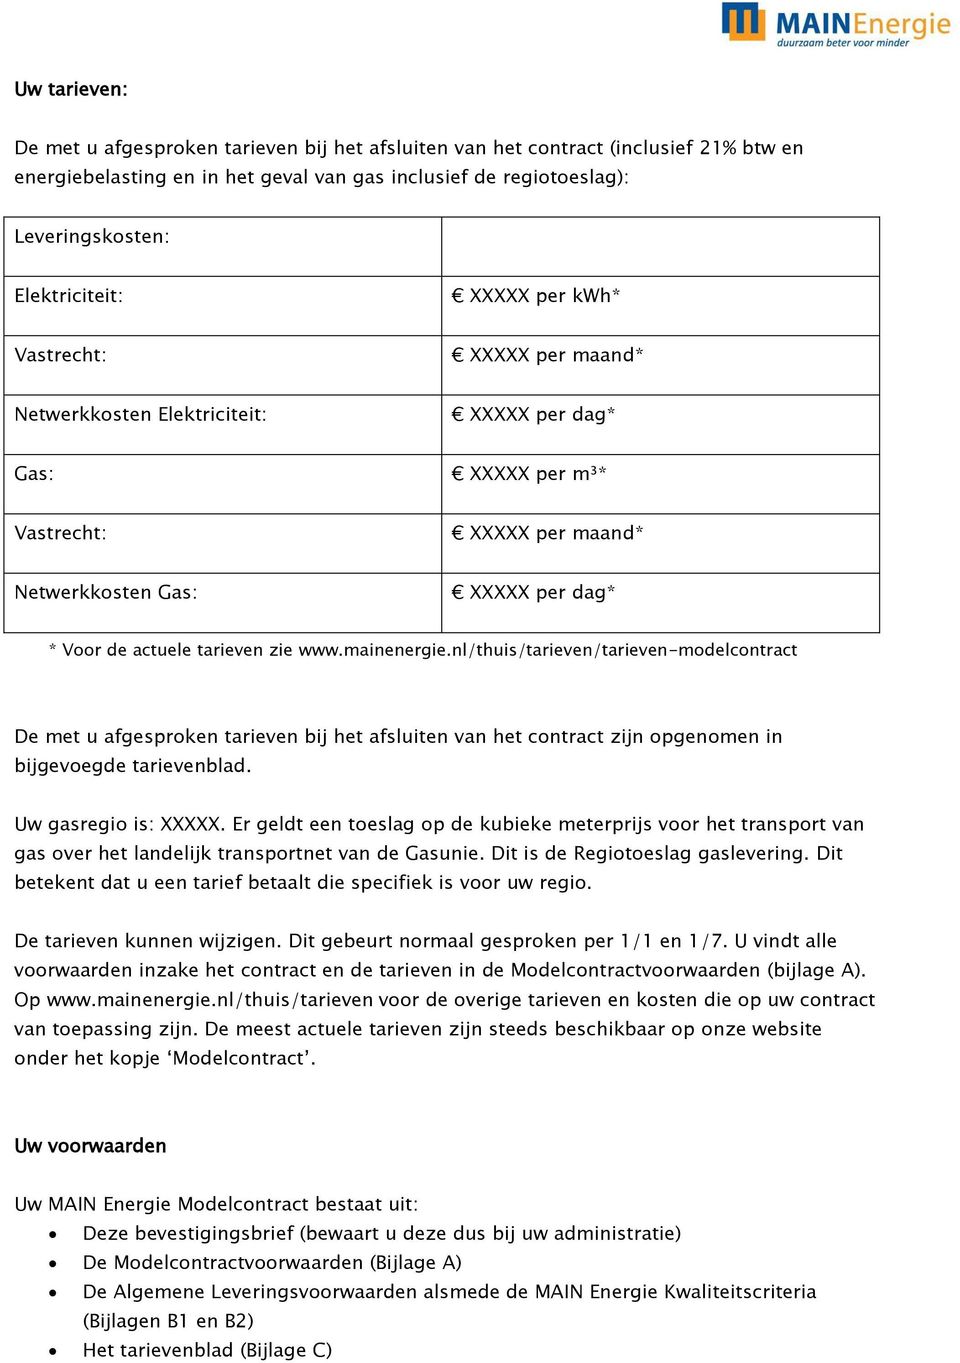 actuele tarieven zie www.mainenergie.nl/thuis/tarieven/tarieven-modelcontract De met u afgesproken tarieven bij het afsluiten van het contract zijn opgenomen in bijgevoegde tarievenblad.